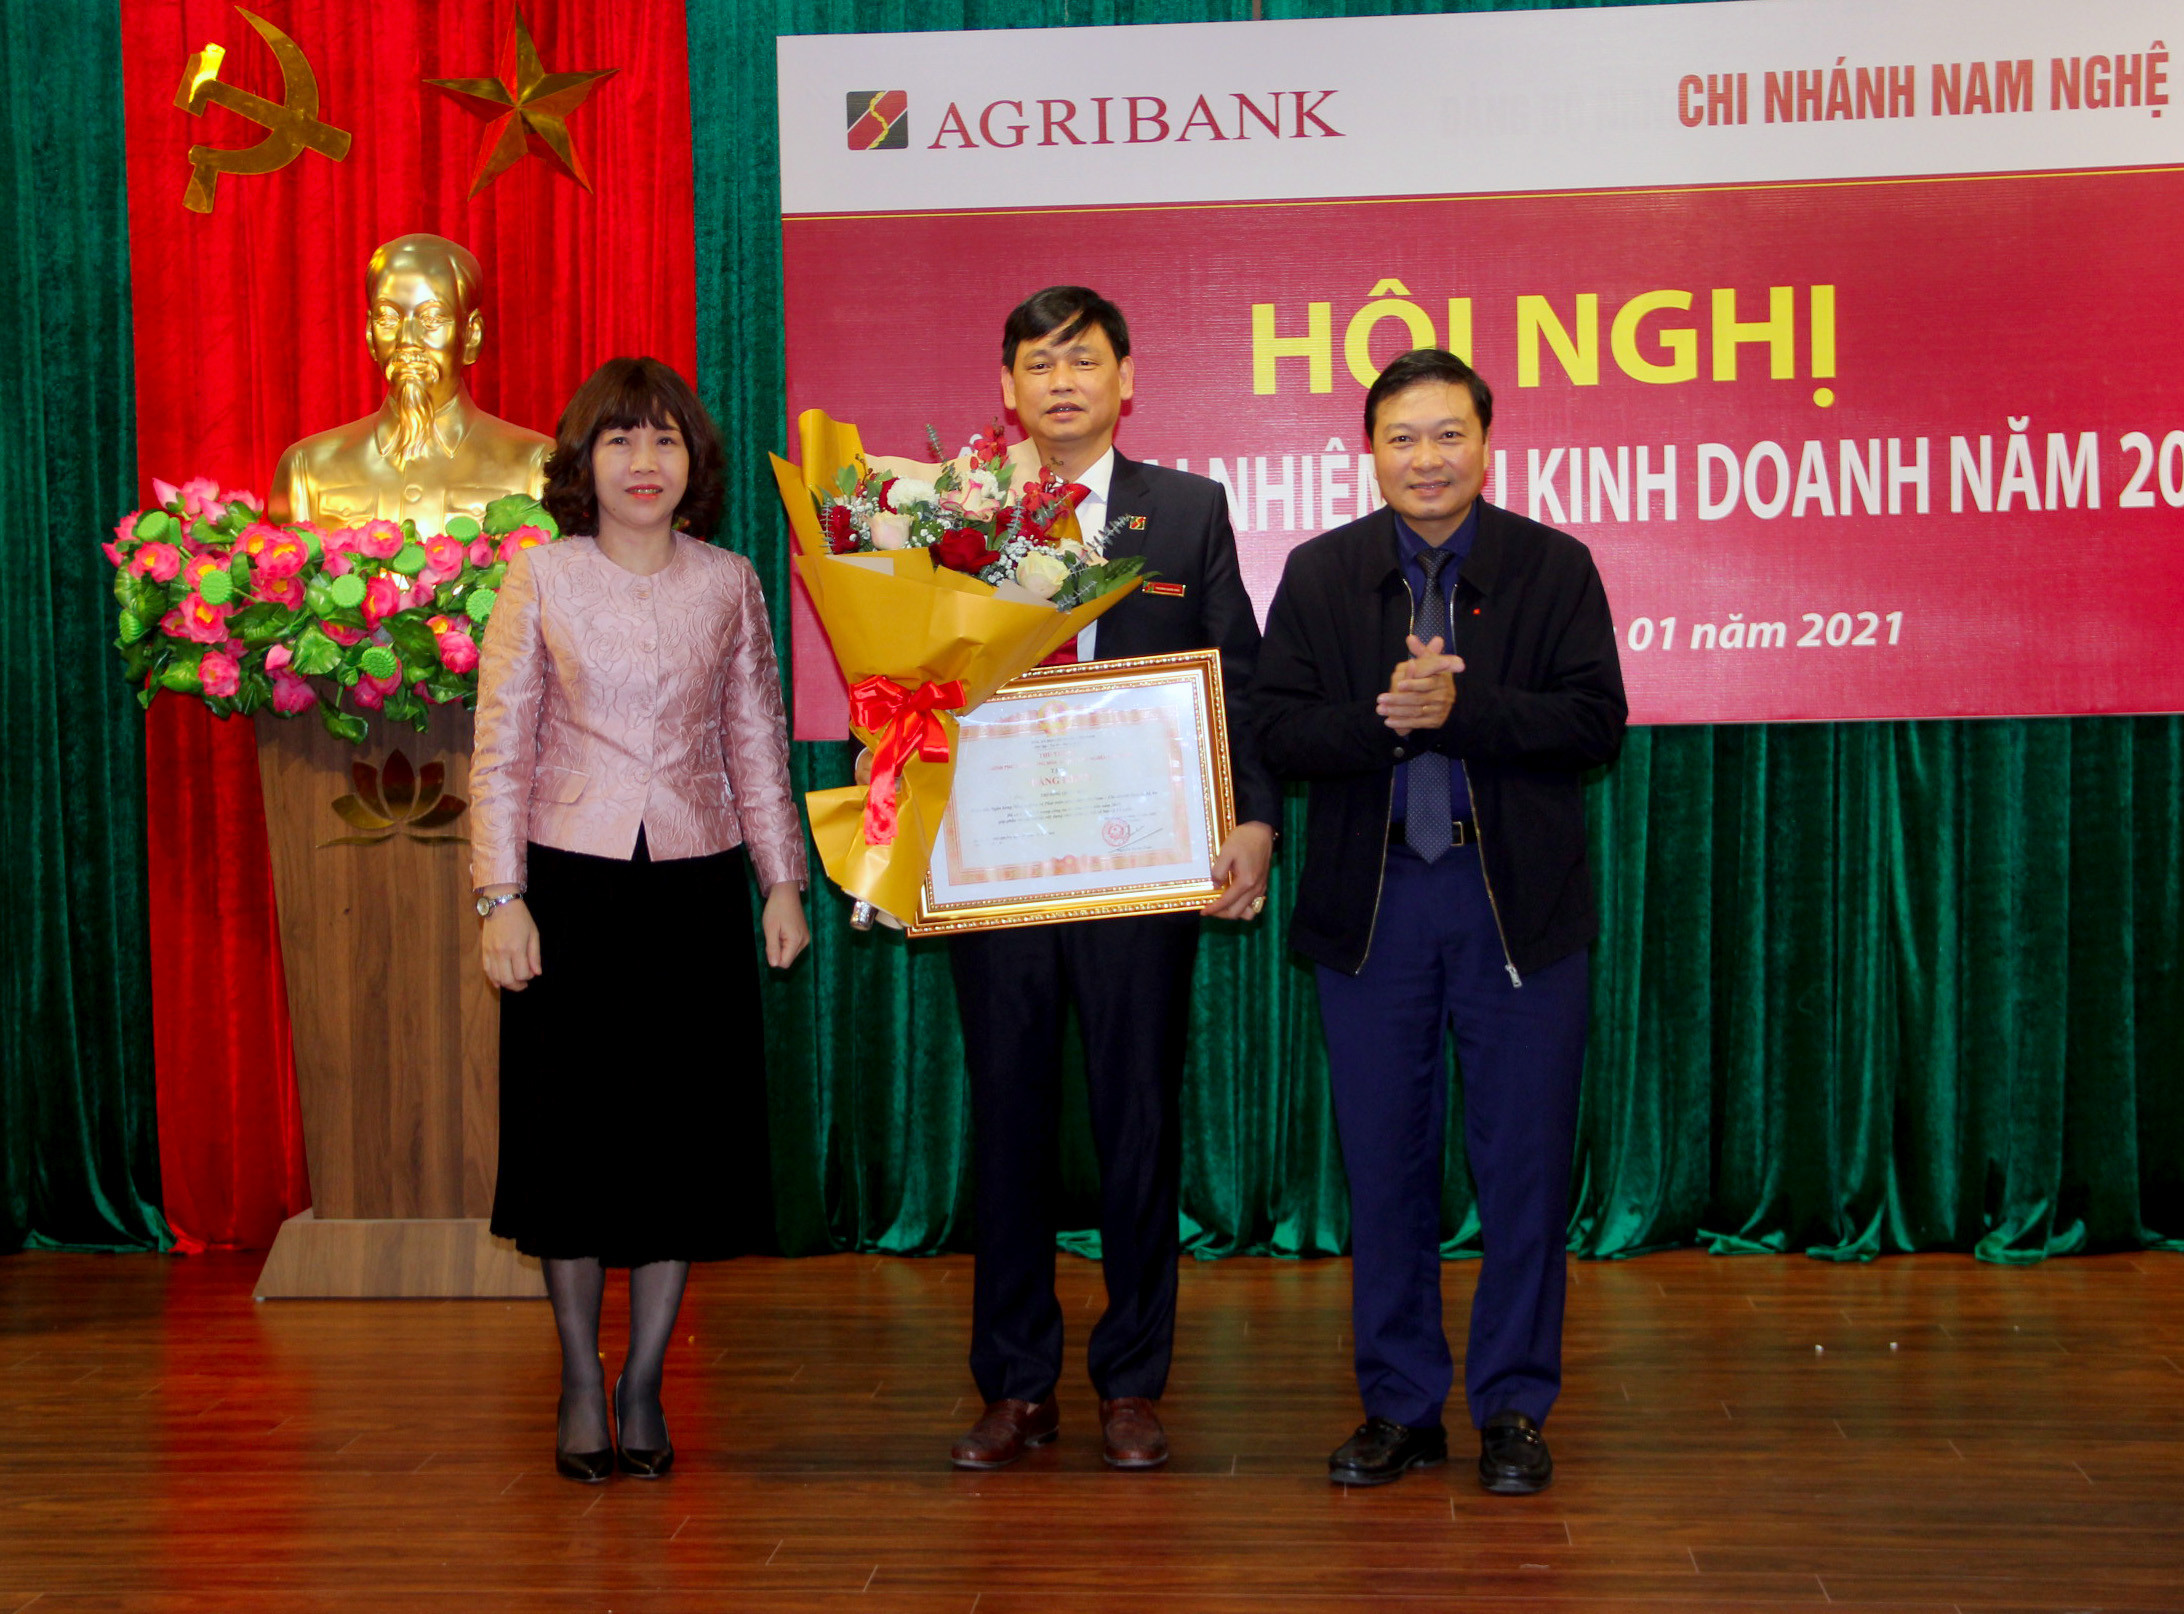 Giám đốc Agribank chi nhánh Nam Nghệ An nhận bằng khen của Thủ tướng Chính Phủ. Ảnh: Quang An